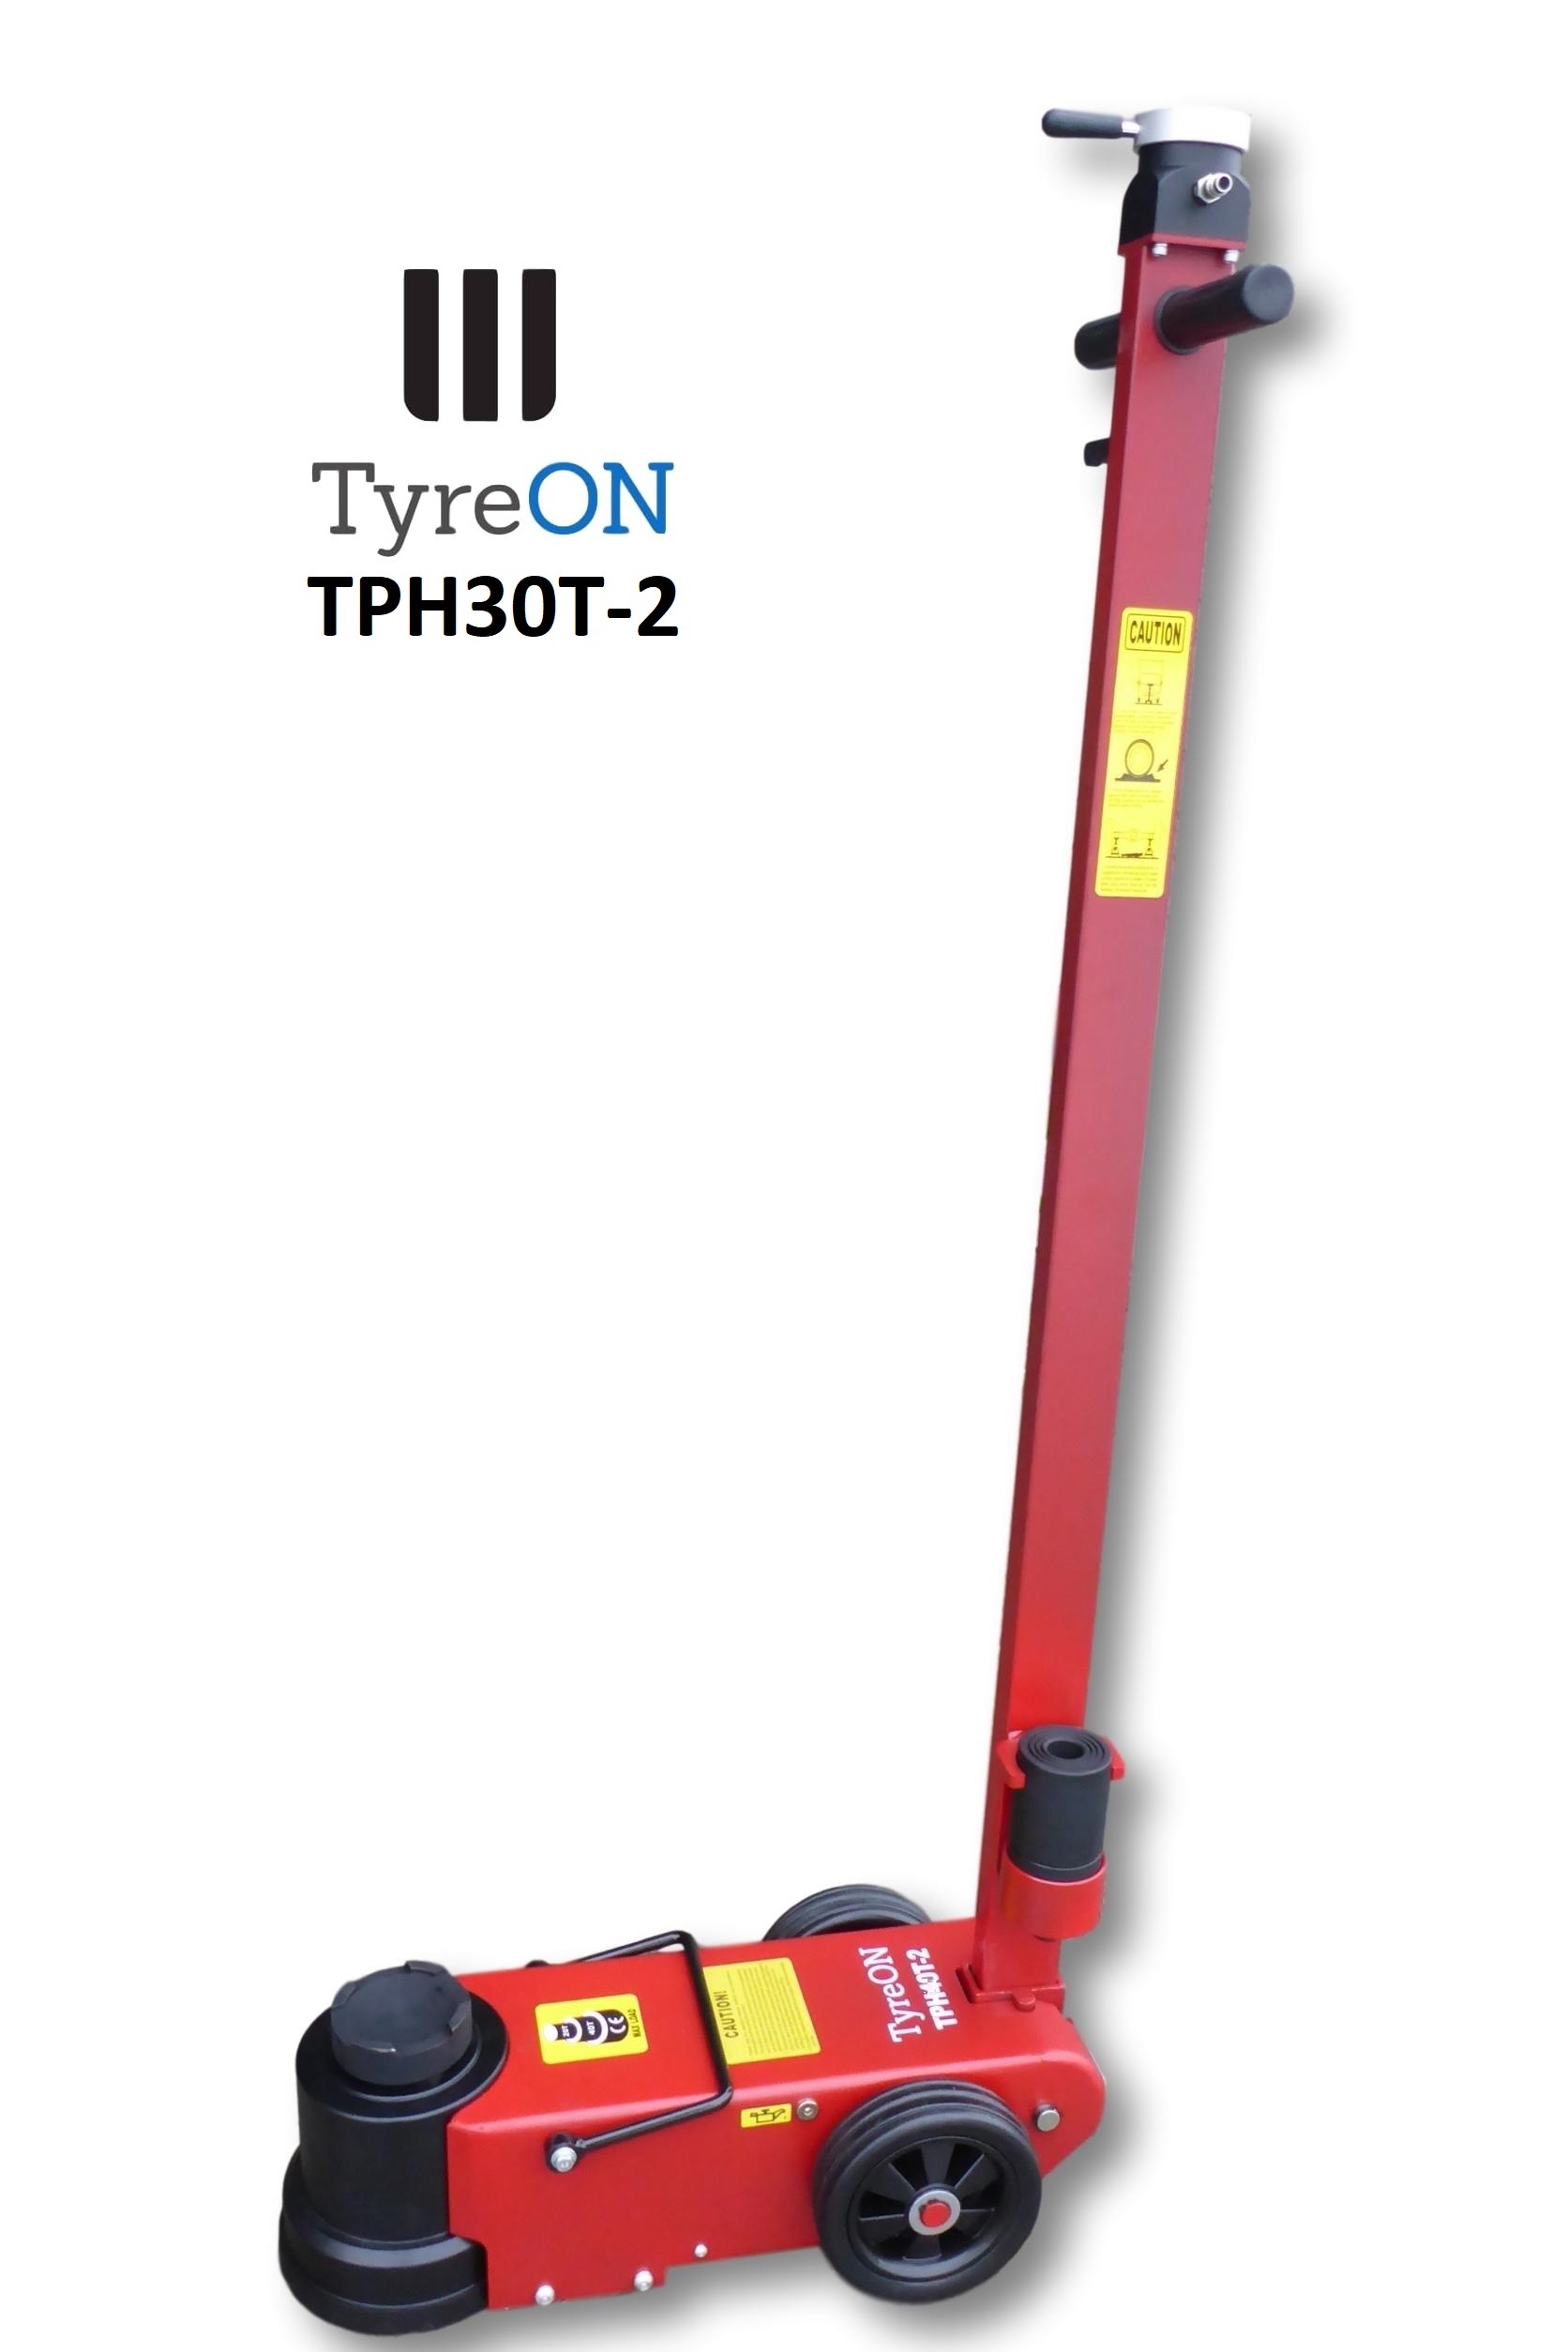 TyreON TPH40T-3 pneumatisch hydraulische krik